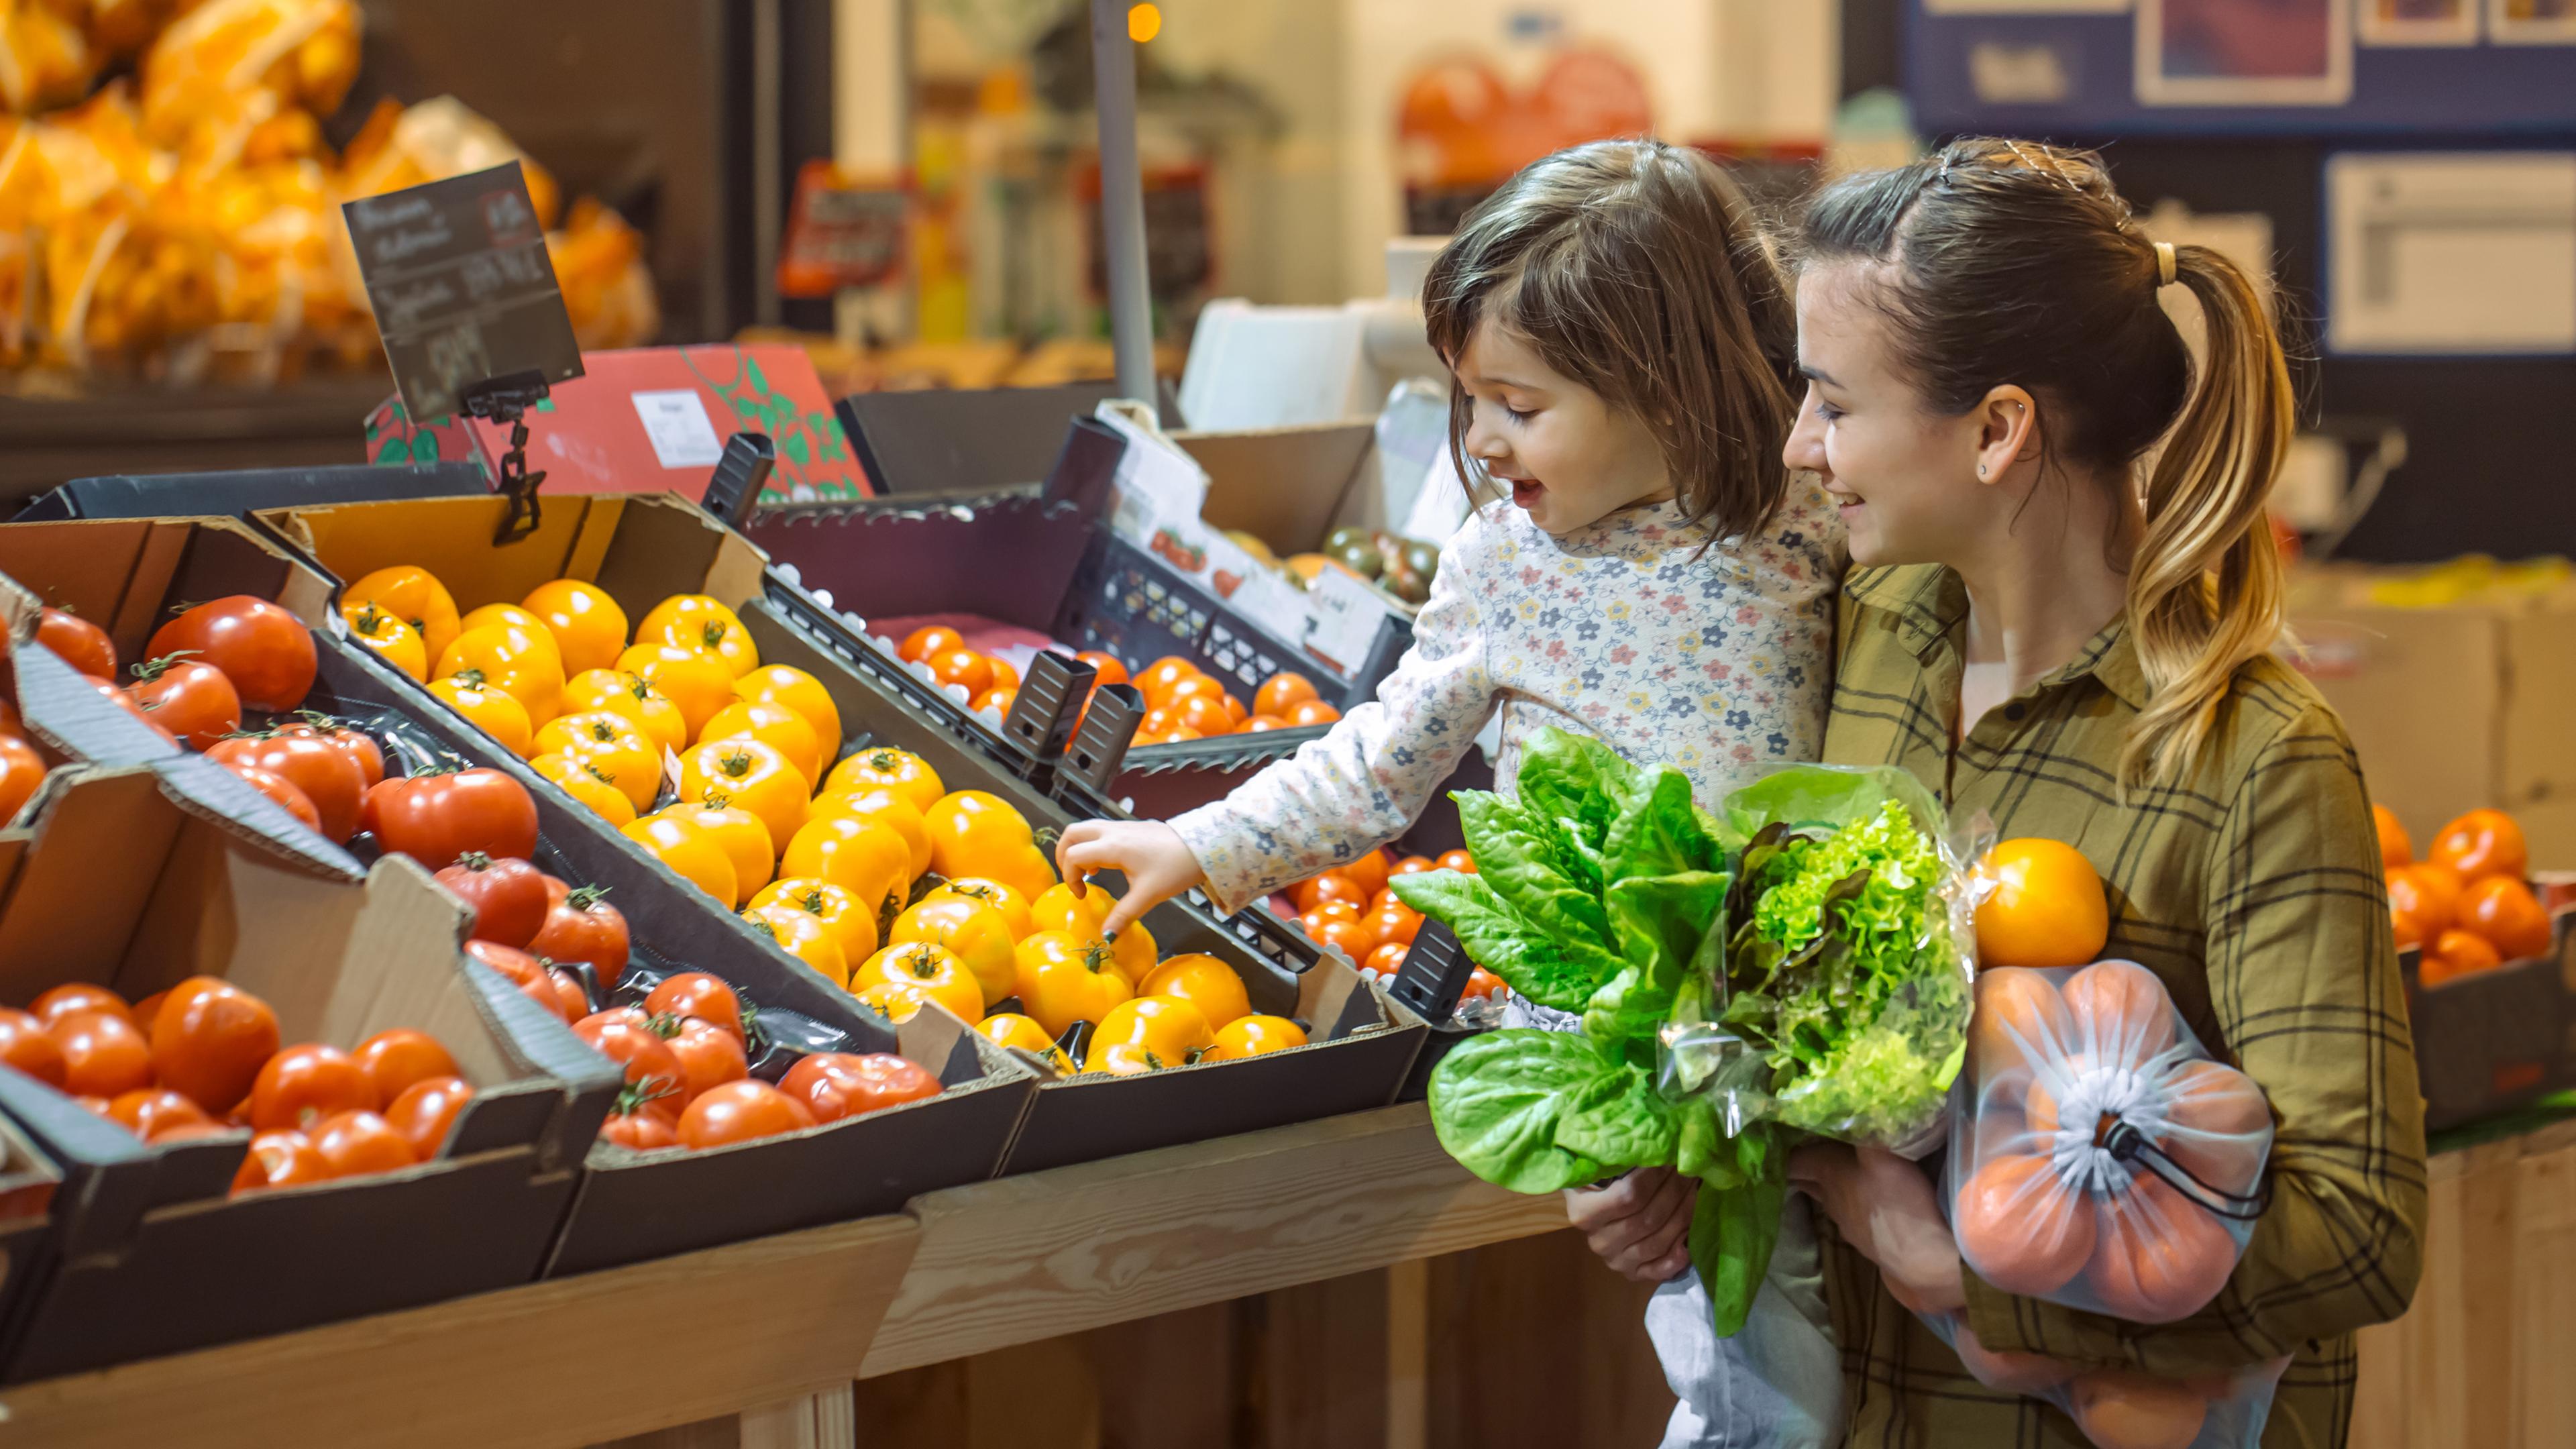 Frau mit Kind auf dem Arm kauft Obst im Supermarkt.